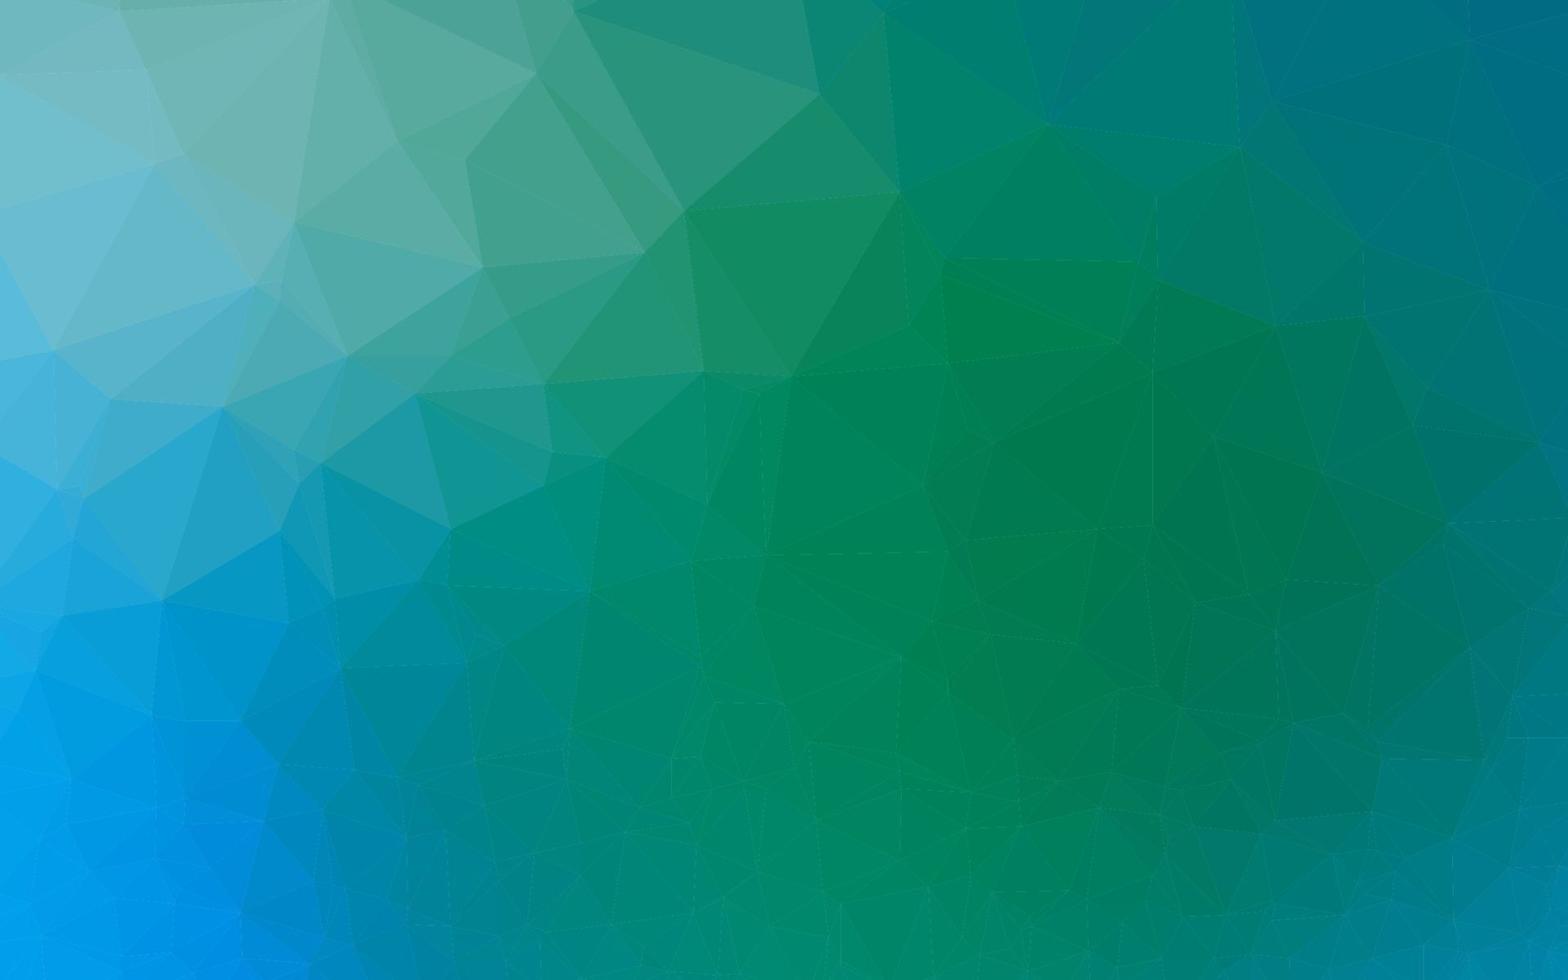 copertina poligonale astratta di vettore azzurro, verde.